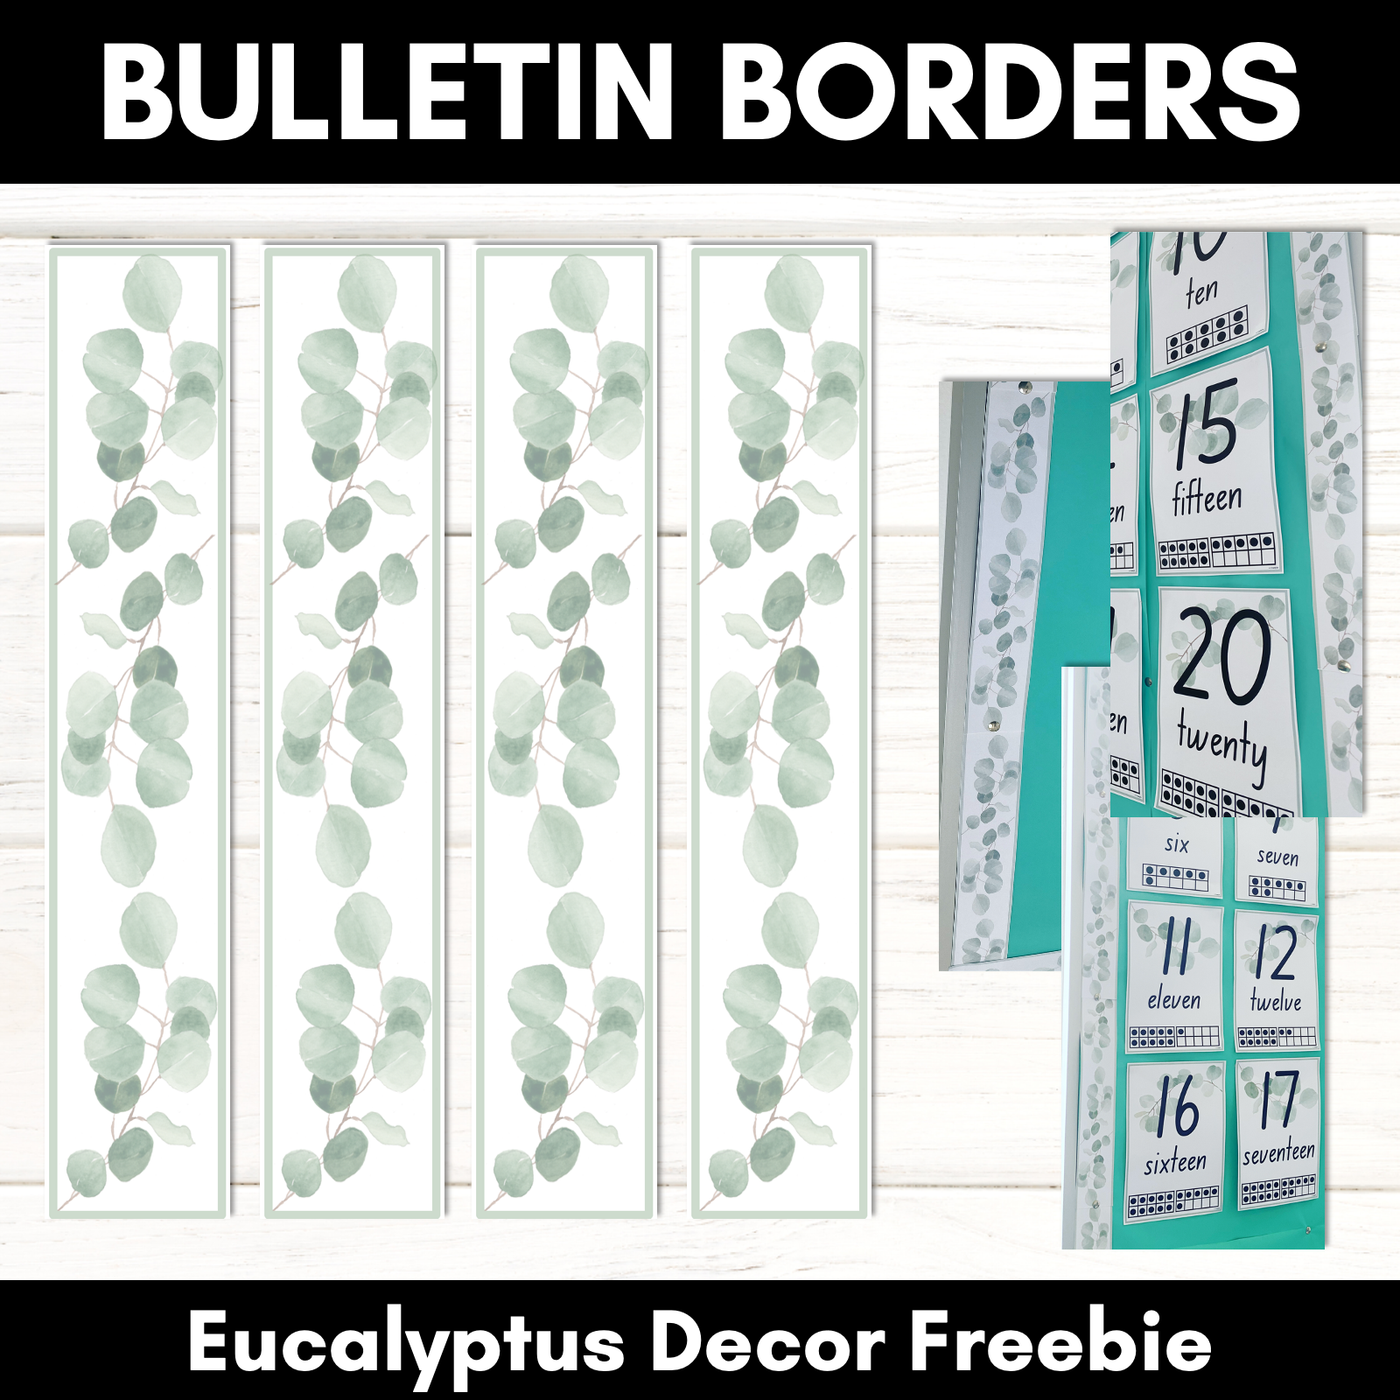 EUCALYPTUS DECOR Bulletin Borders